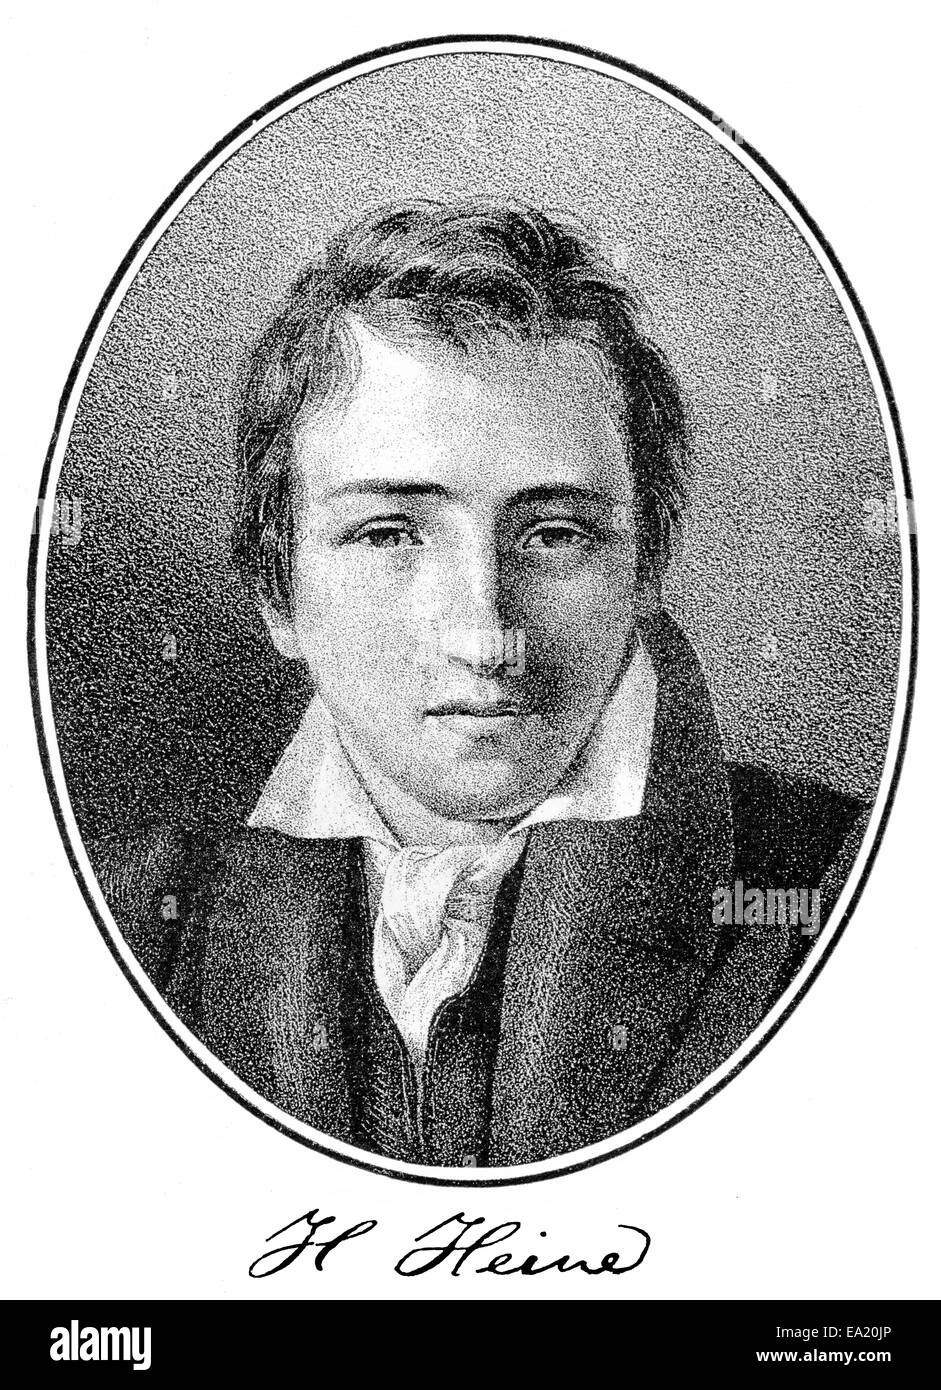 Porträt von Christian Johann Heinrich Heine, 1797-1856, deutscher Dichter,  Schriftsteller und Journalist, Porträt von Christian Johann He  Stockfotografie - Alamy